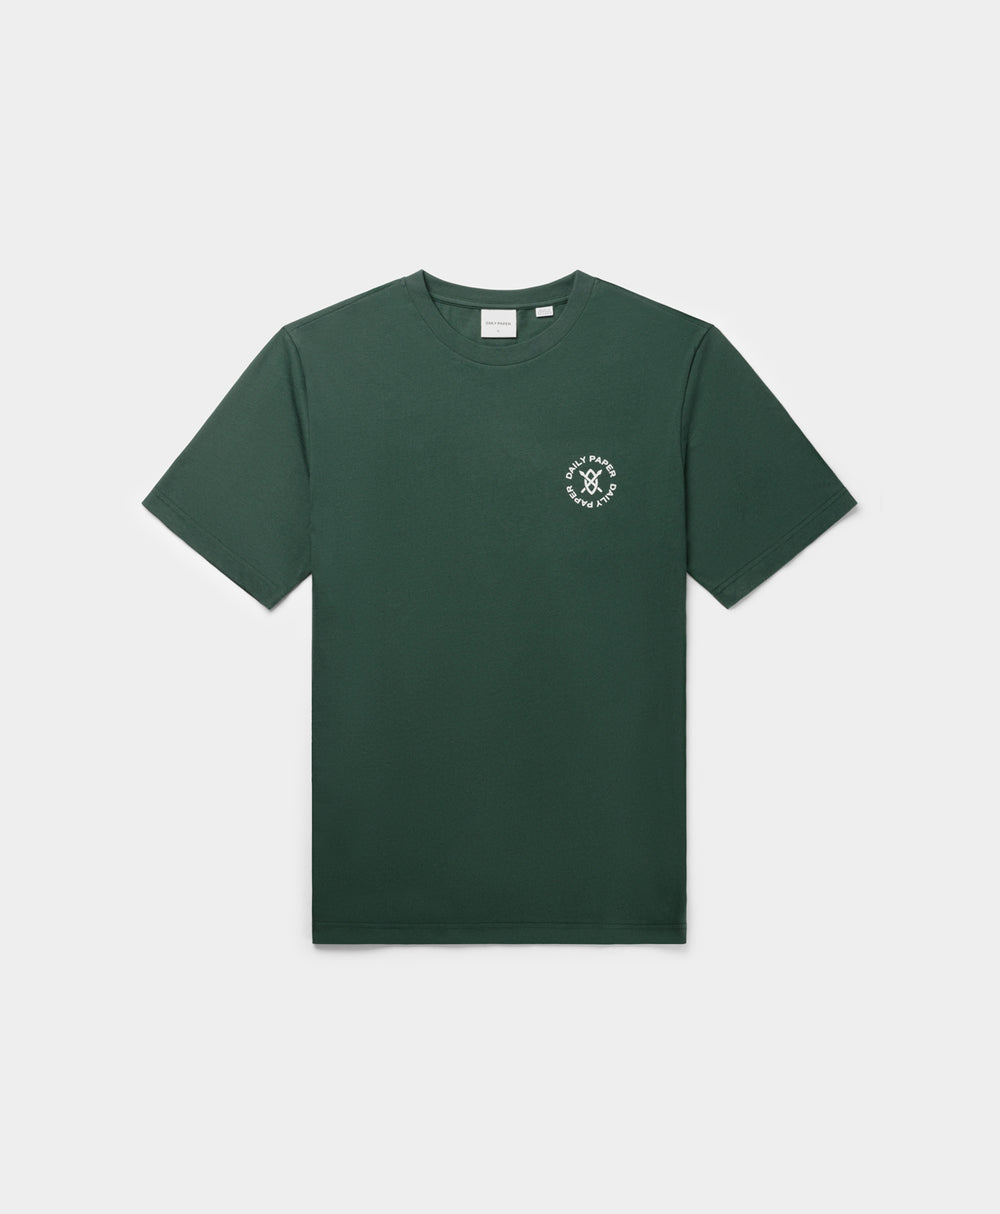 DP - Pine Green Circle T-Shirt - Packshot - Front